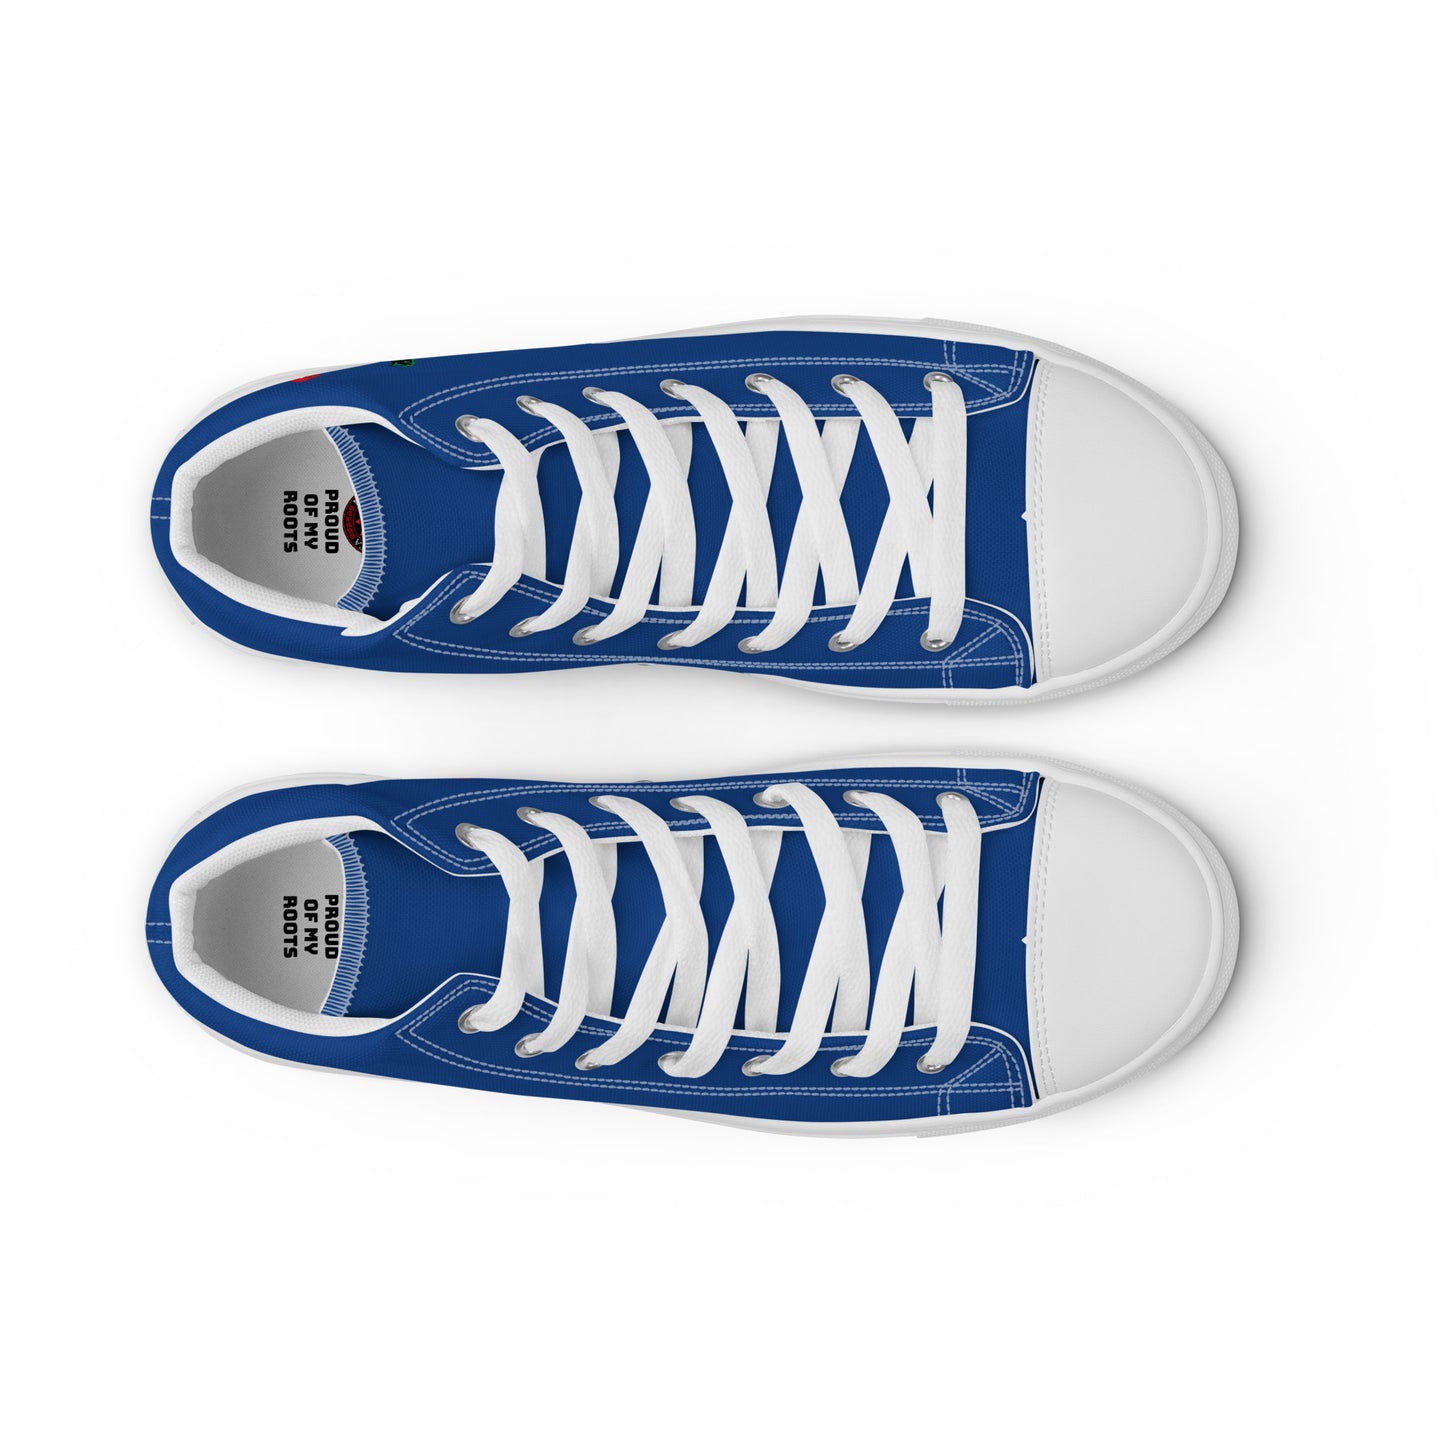 Cuba - Women - Blue - High top shoes